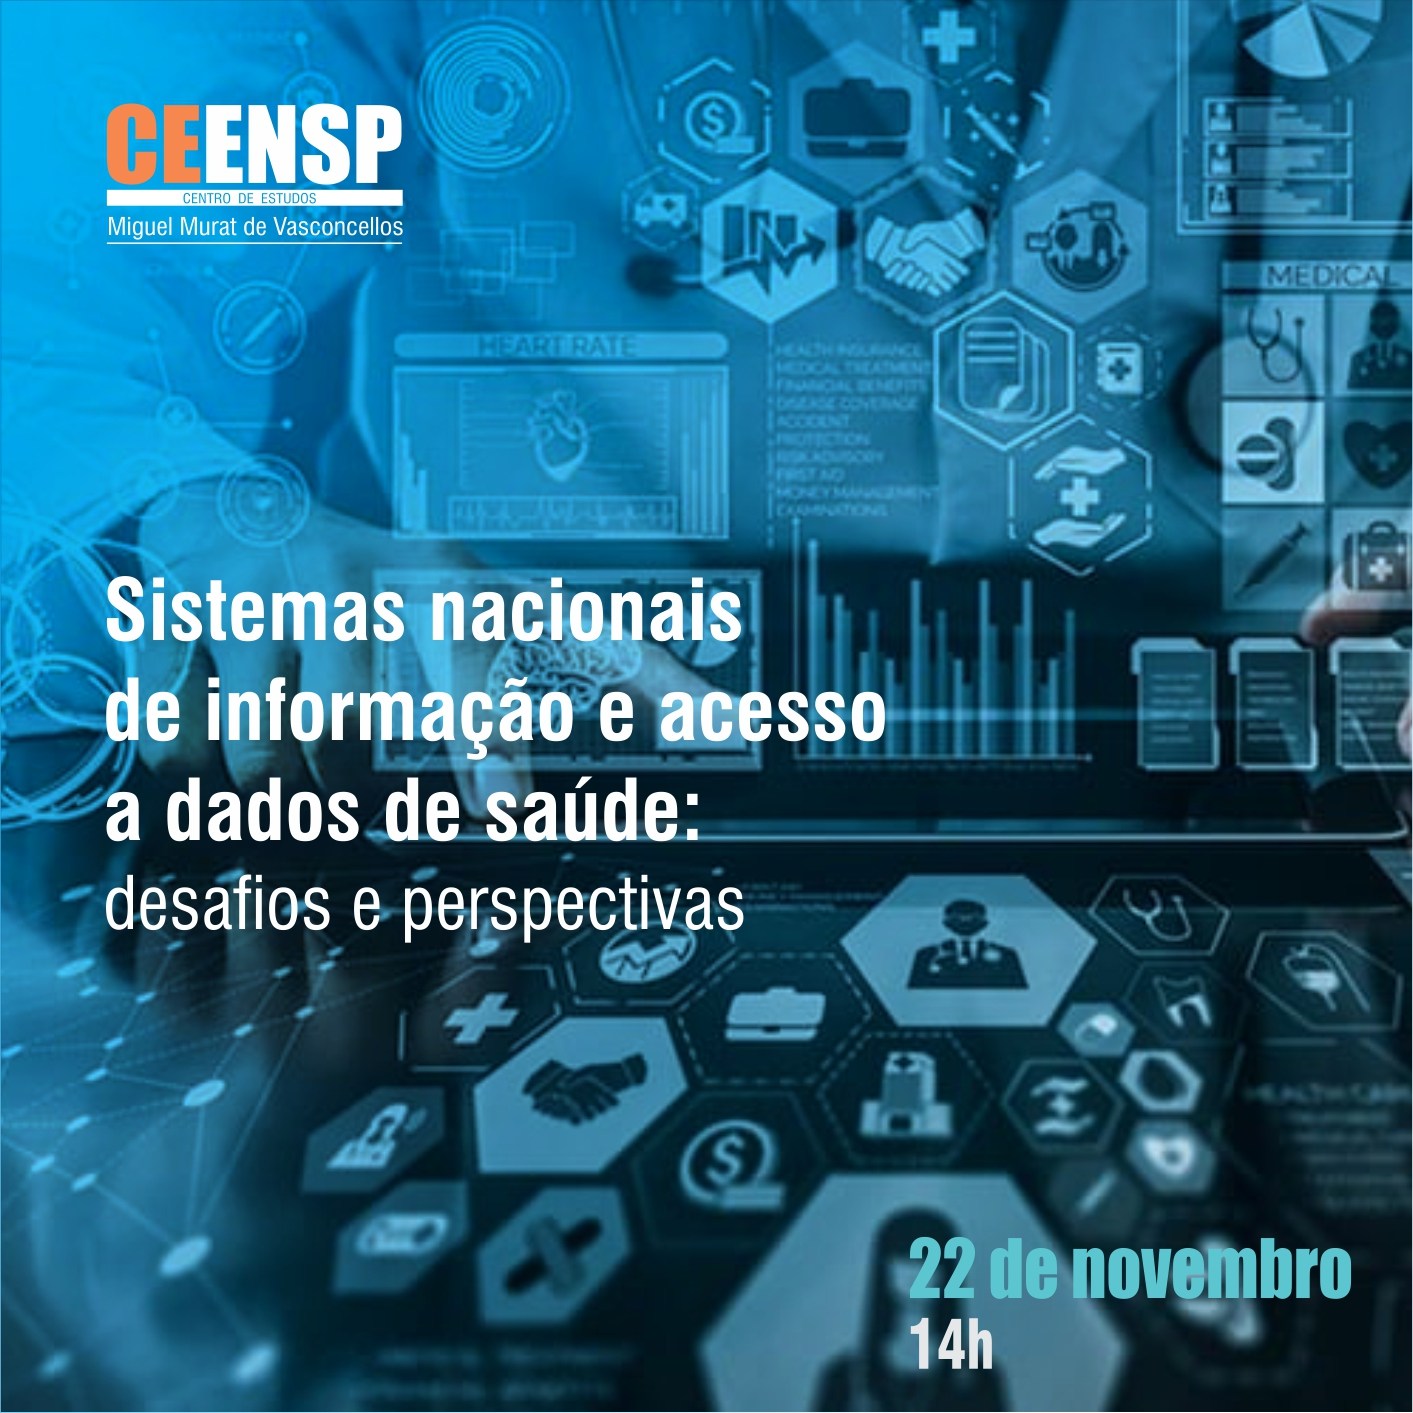 Ceensp debate desafios e perspectivas dos sistemas nacionais de informação e acesso a dados de saúde